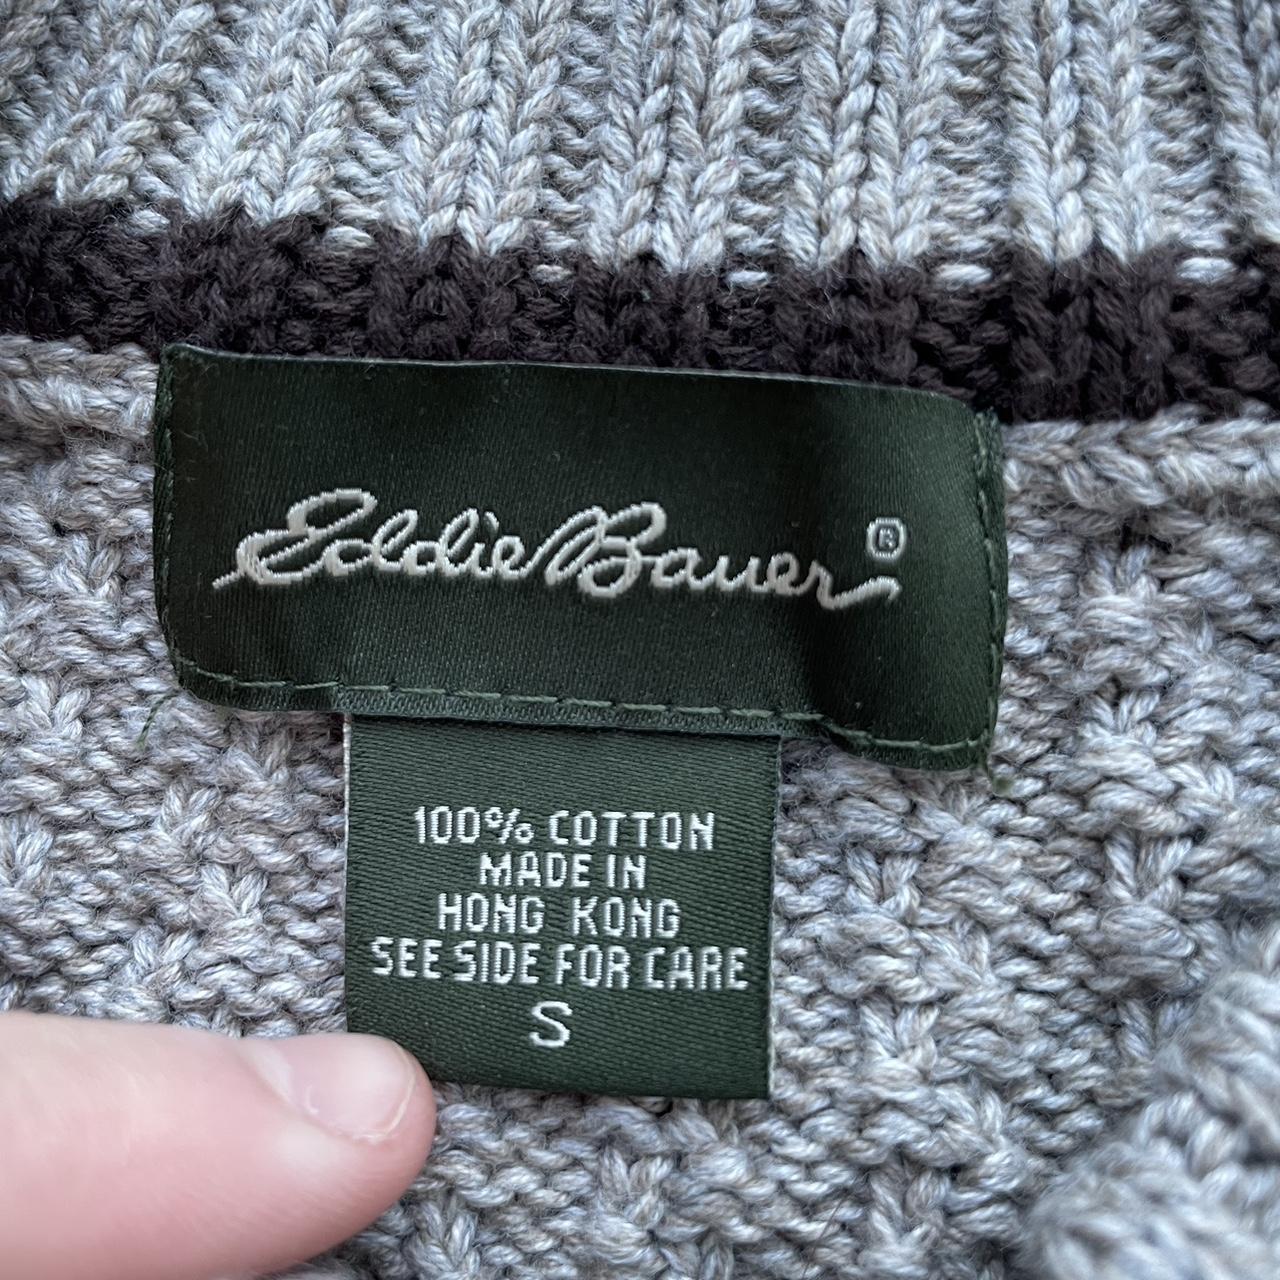 new eddie bauer button up sweater cardigan tan brown... - Depop